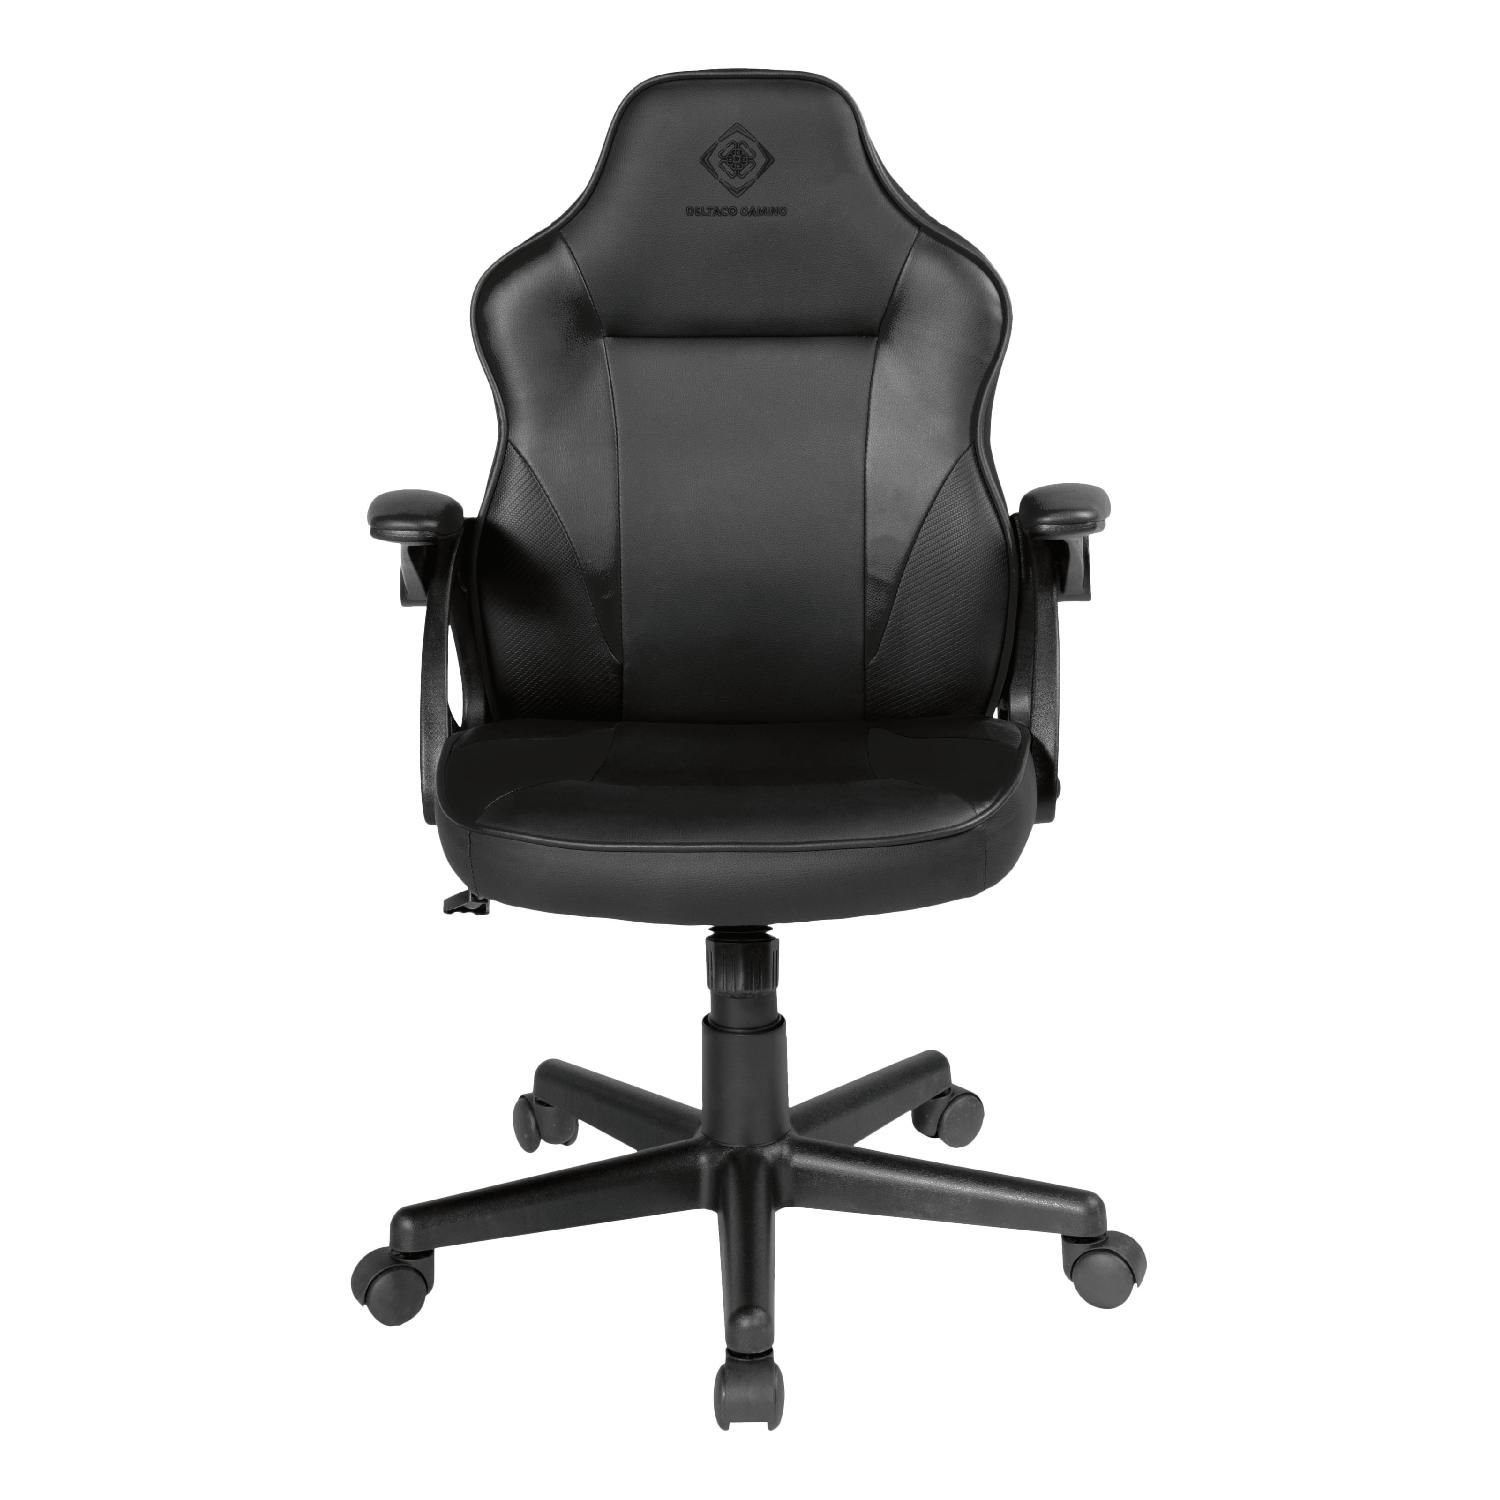 DELTACO Gaming-Stuhl Gaming Stuhl DC120 "Junior" höhenverstellbar Kunstleder, klein, für Personen bis 150 cm inkl. 5 Jahre Herstellergarantie schwarz